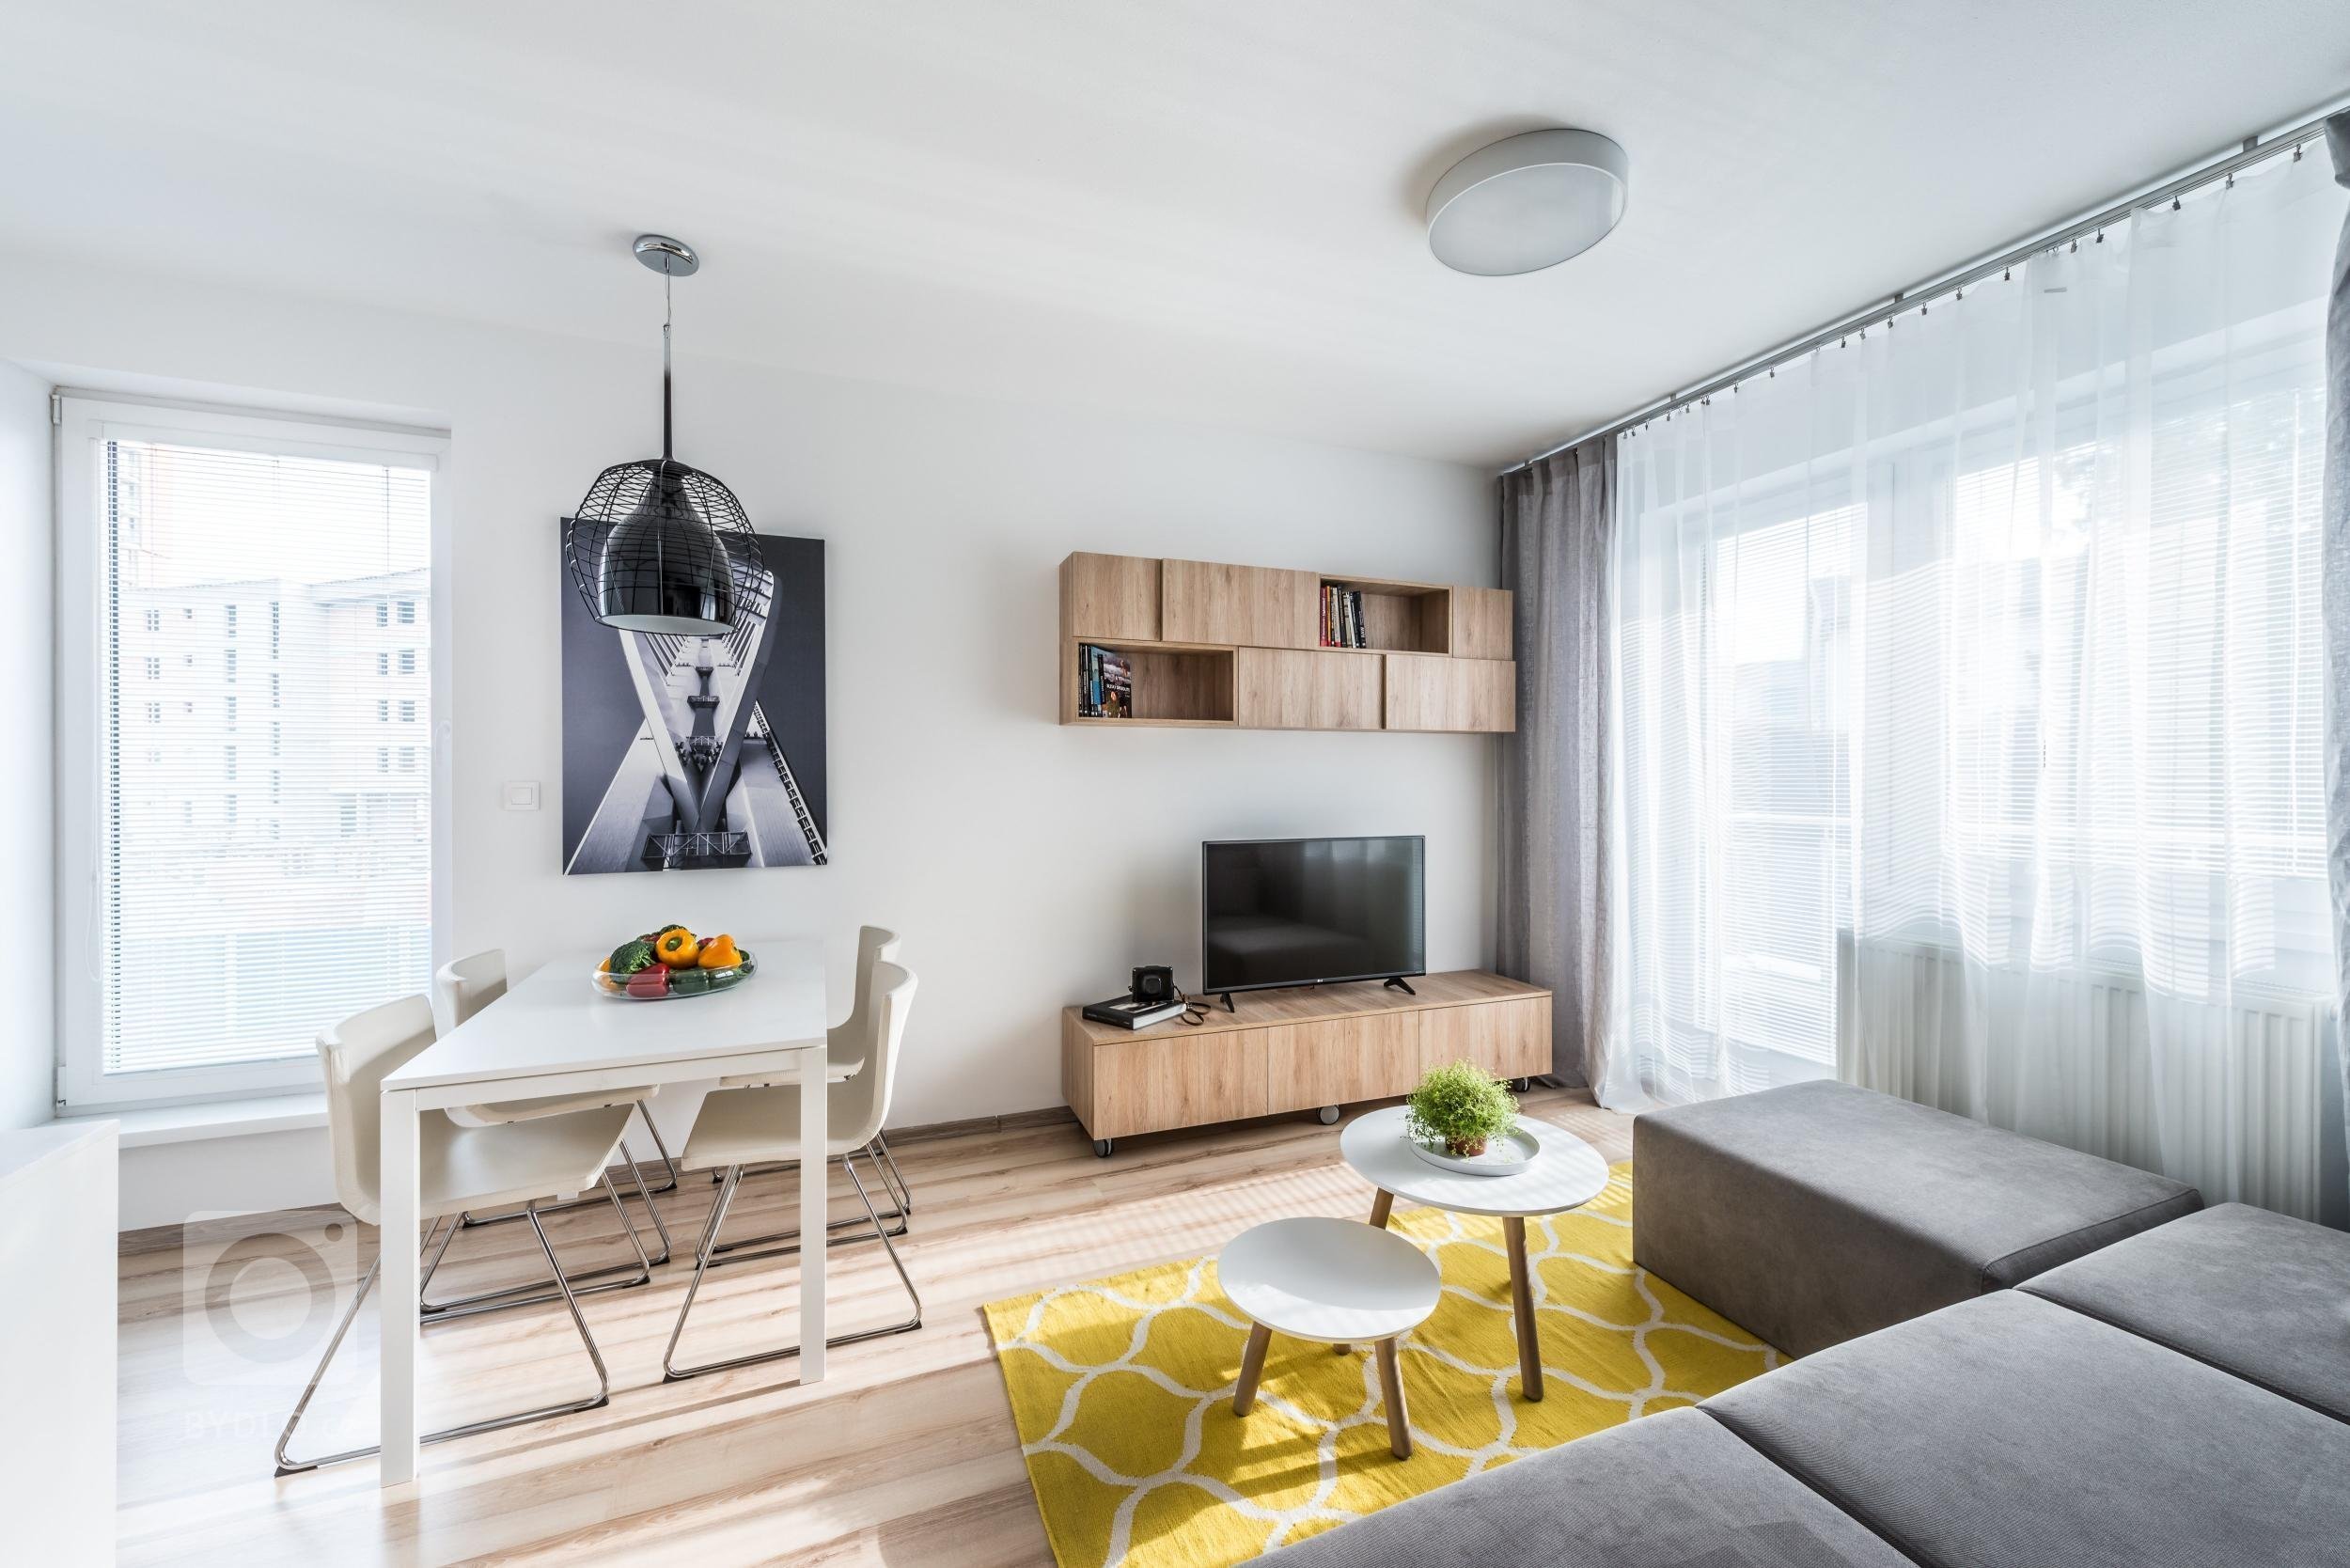 Optimistický interiér malého bytu obsahuje minimum zbytečností, proto působí čistě a prostorně. Velkoplošné fototapety z portfolia majitele zvětšují měřítko…